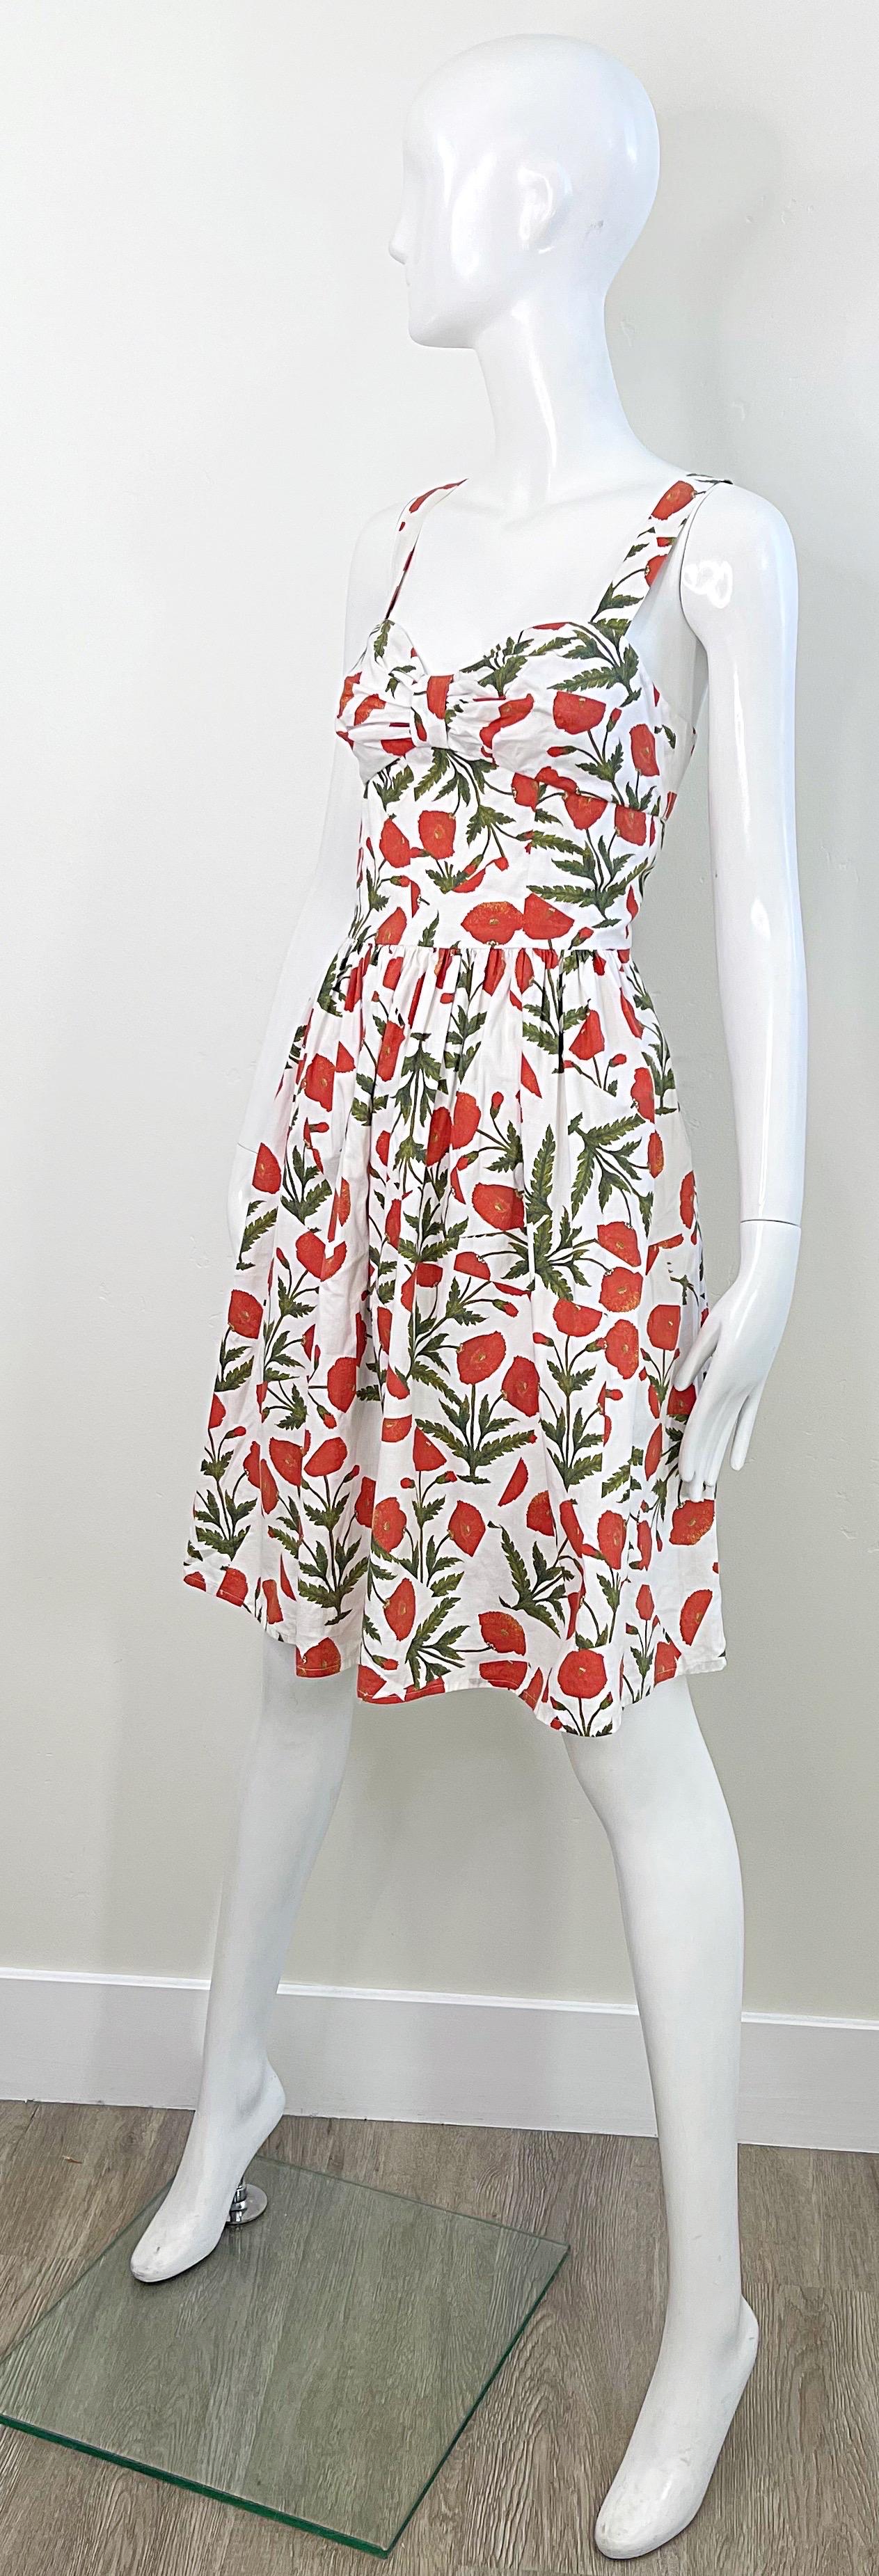 1990s Oscar de la Renta Poppy Print Size 6 Fit & Flare Vintage Cotton 90s Dress For Sale 2